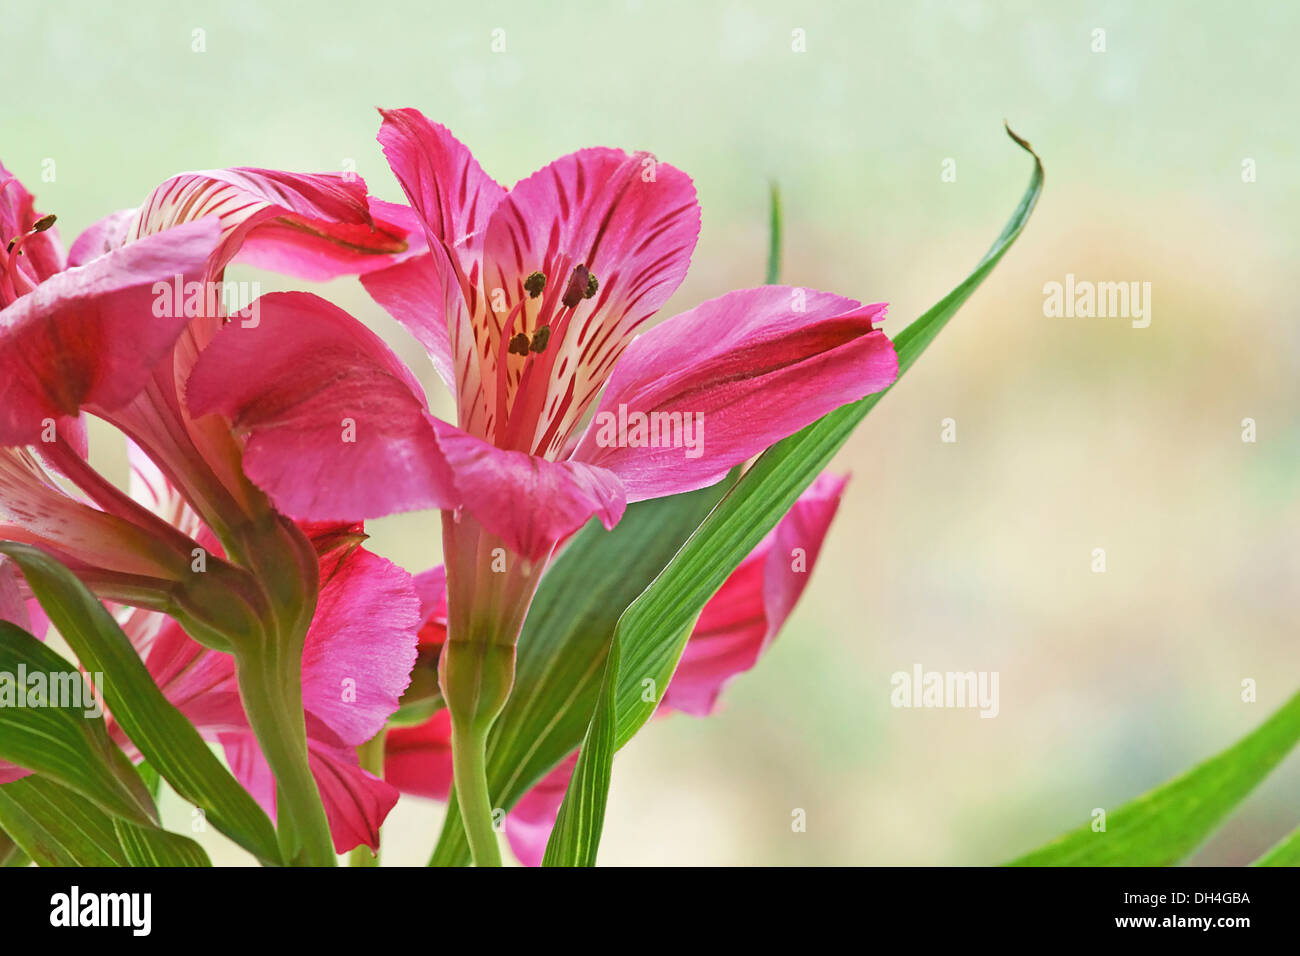 Trichterförmige Blumen Stockfotos und -bilder Kaufen - Alamy